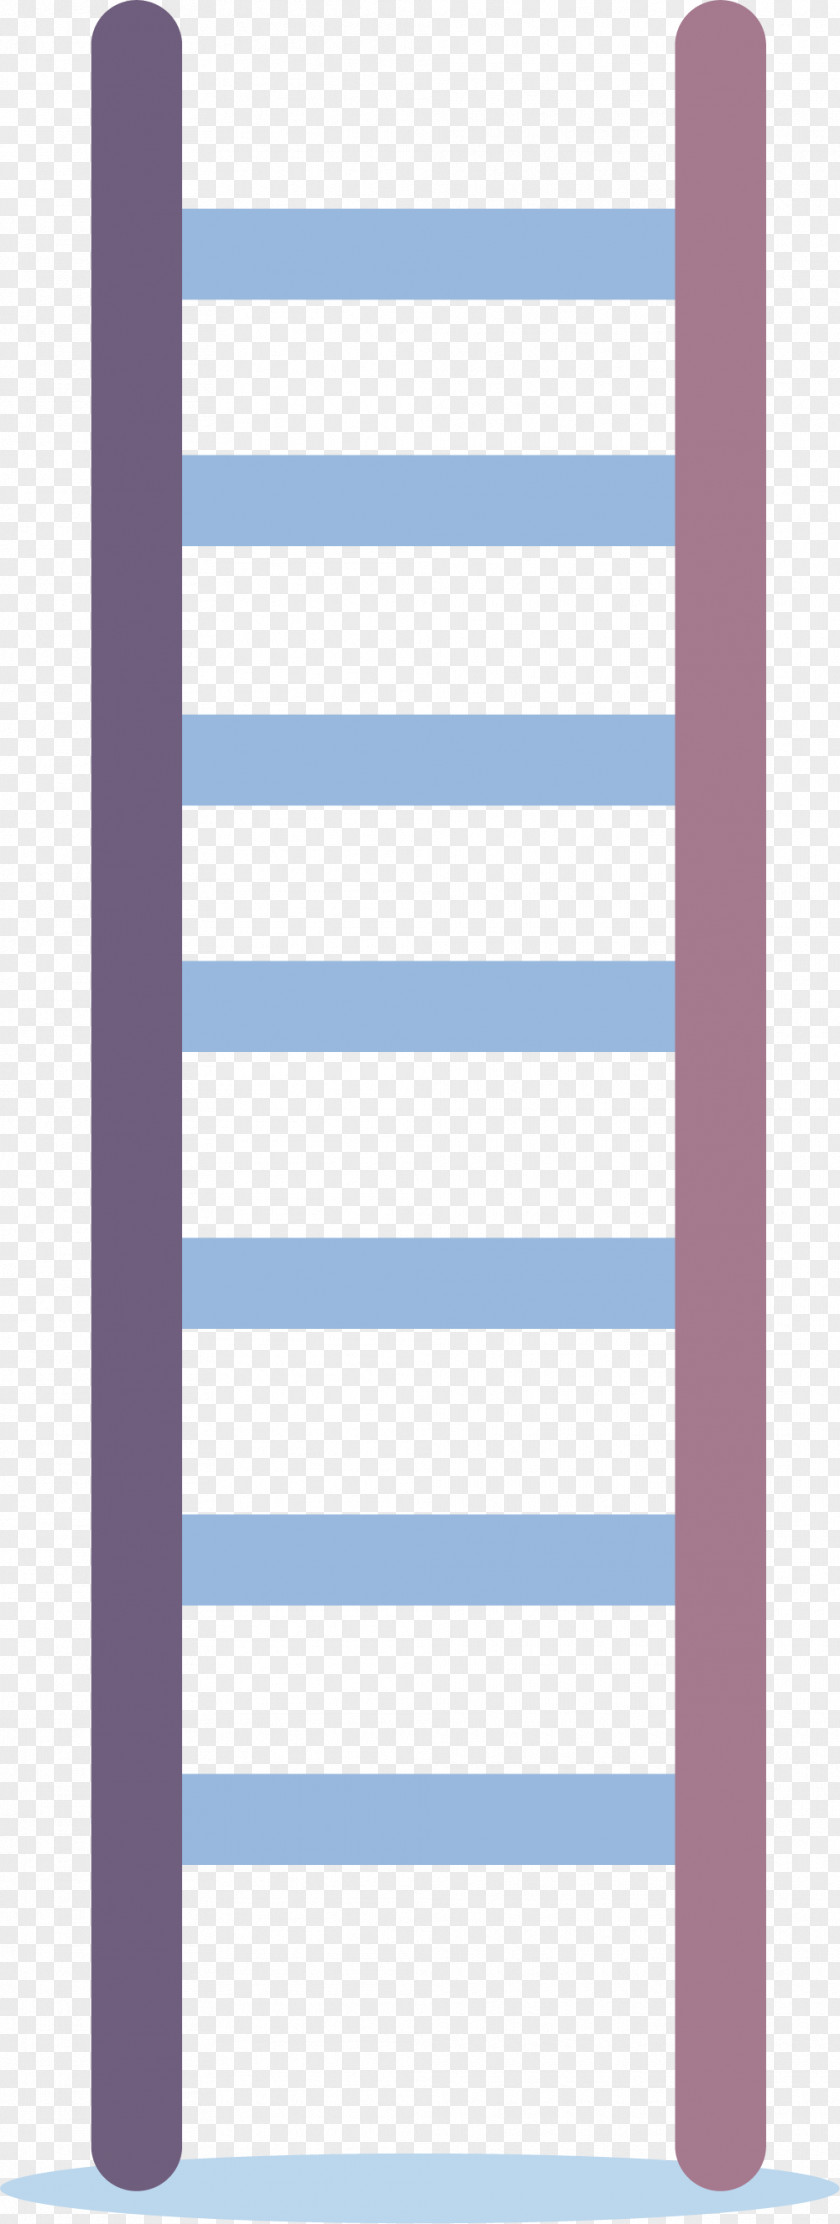 Purple Ladder Google Images Download PNG